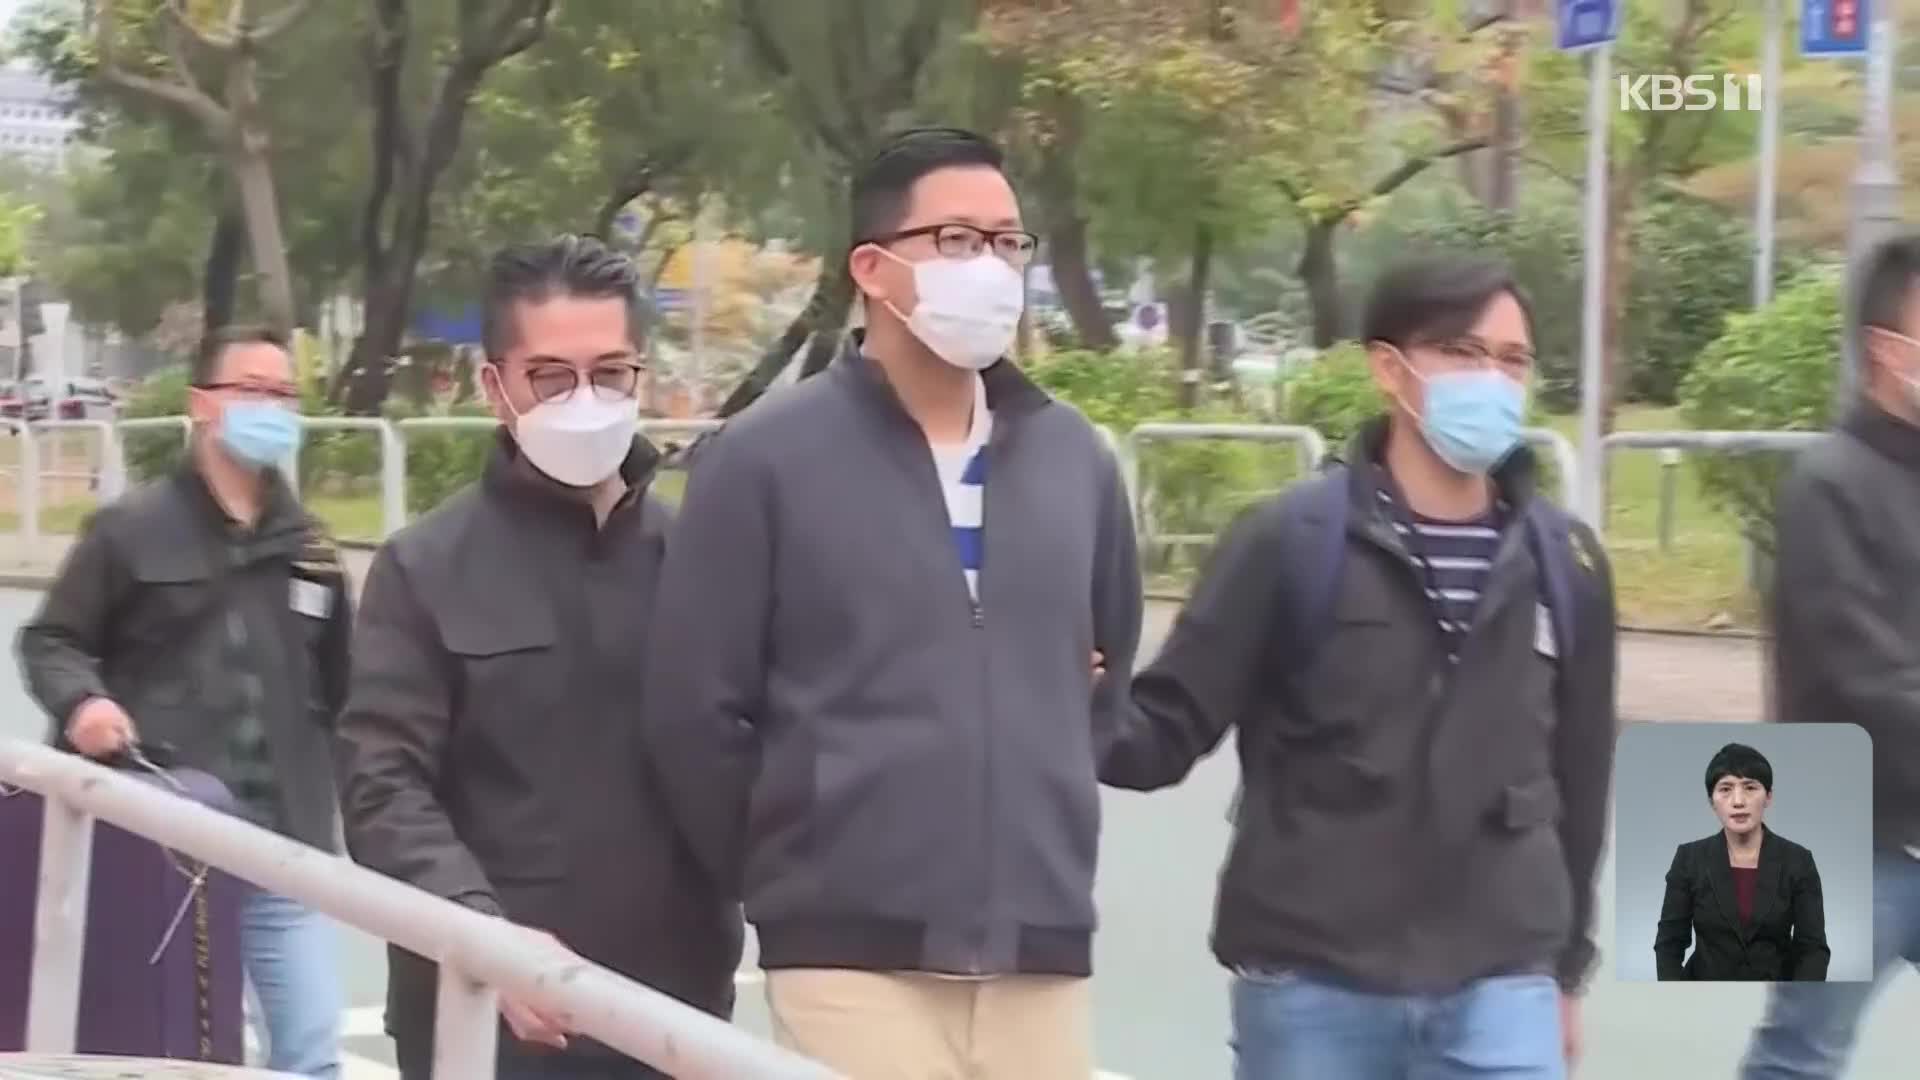 ‘홍콩보안법 위반’ 반중 매체 인사 5명 체포…‘외국 세력과 결탁’